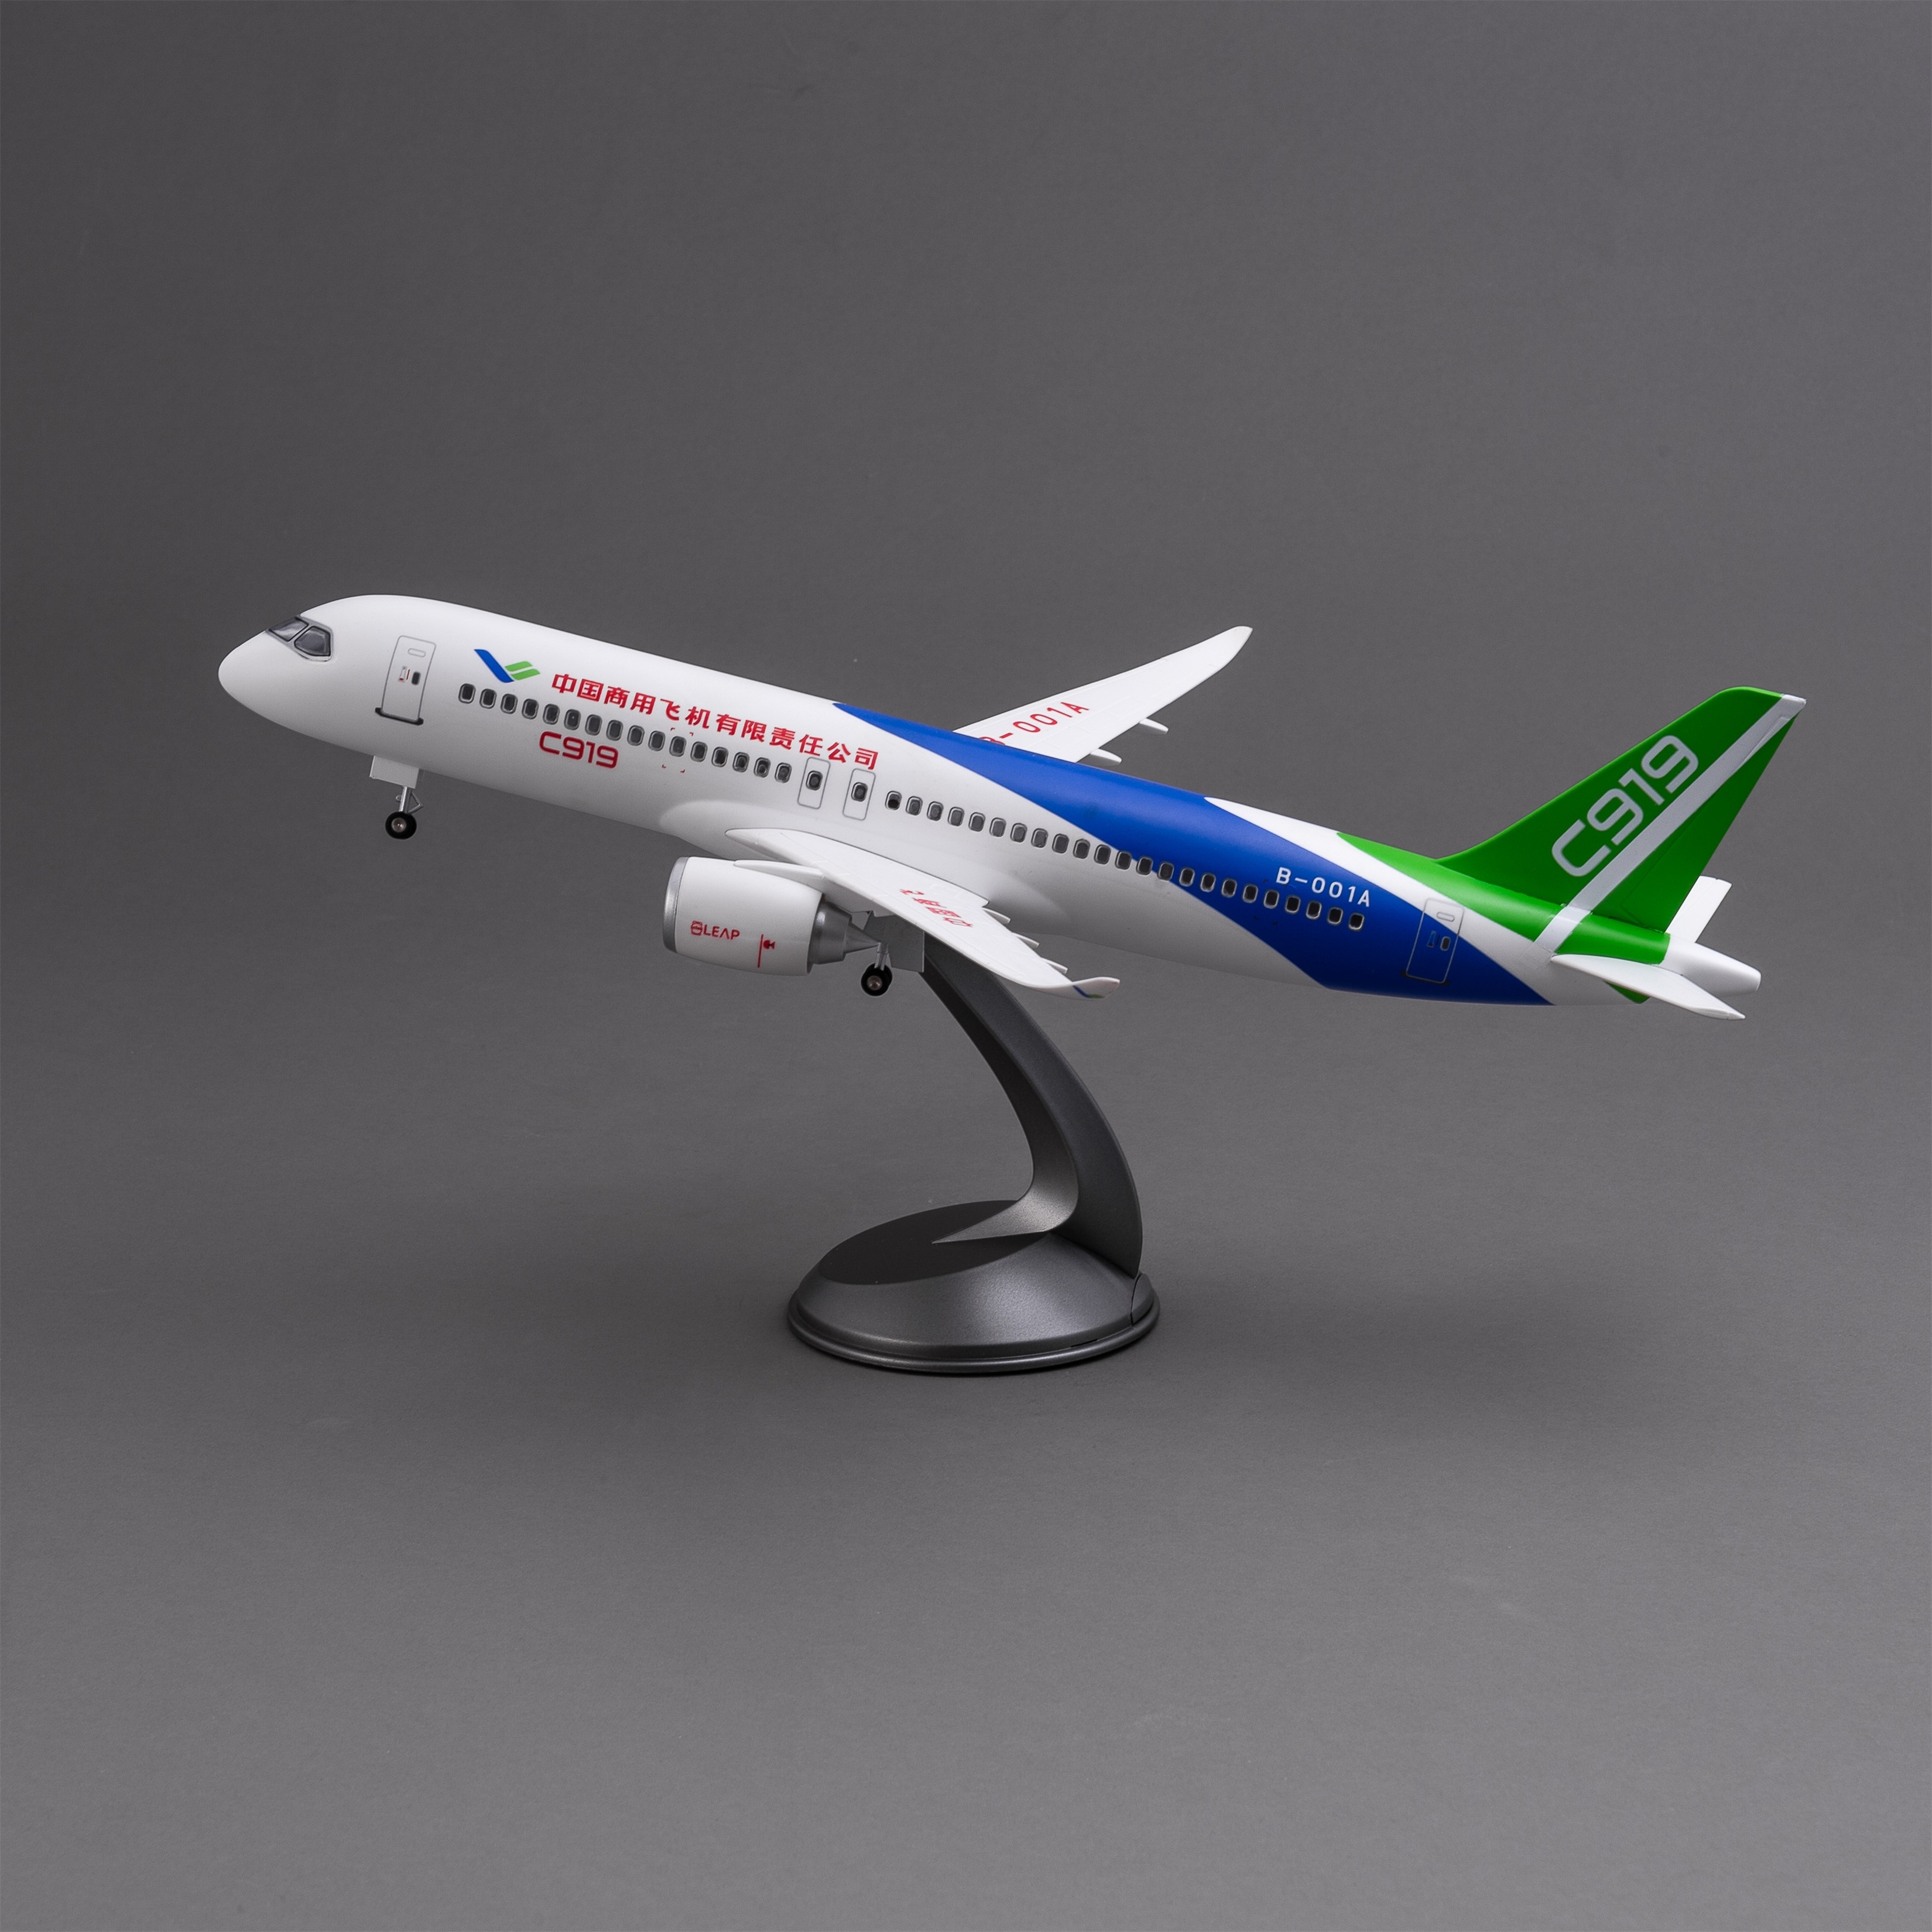 飞机模型（中国商用飞机有限责任公司C919飞机）仿真飞机模型 ABS合成强化树脂飞机模型航空飞机模型图